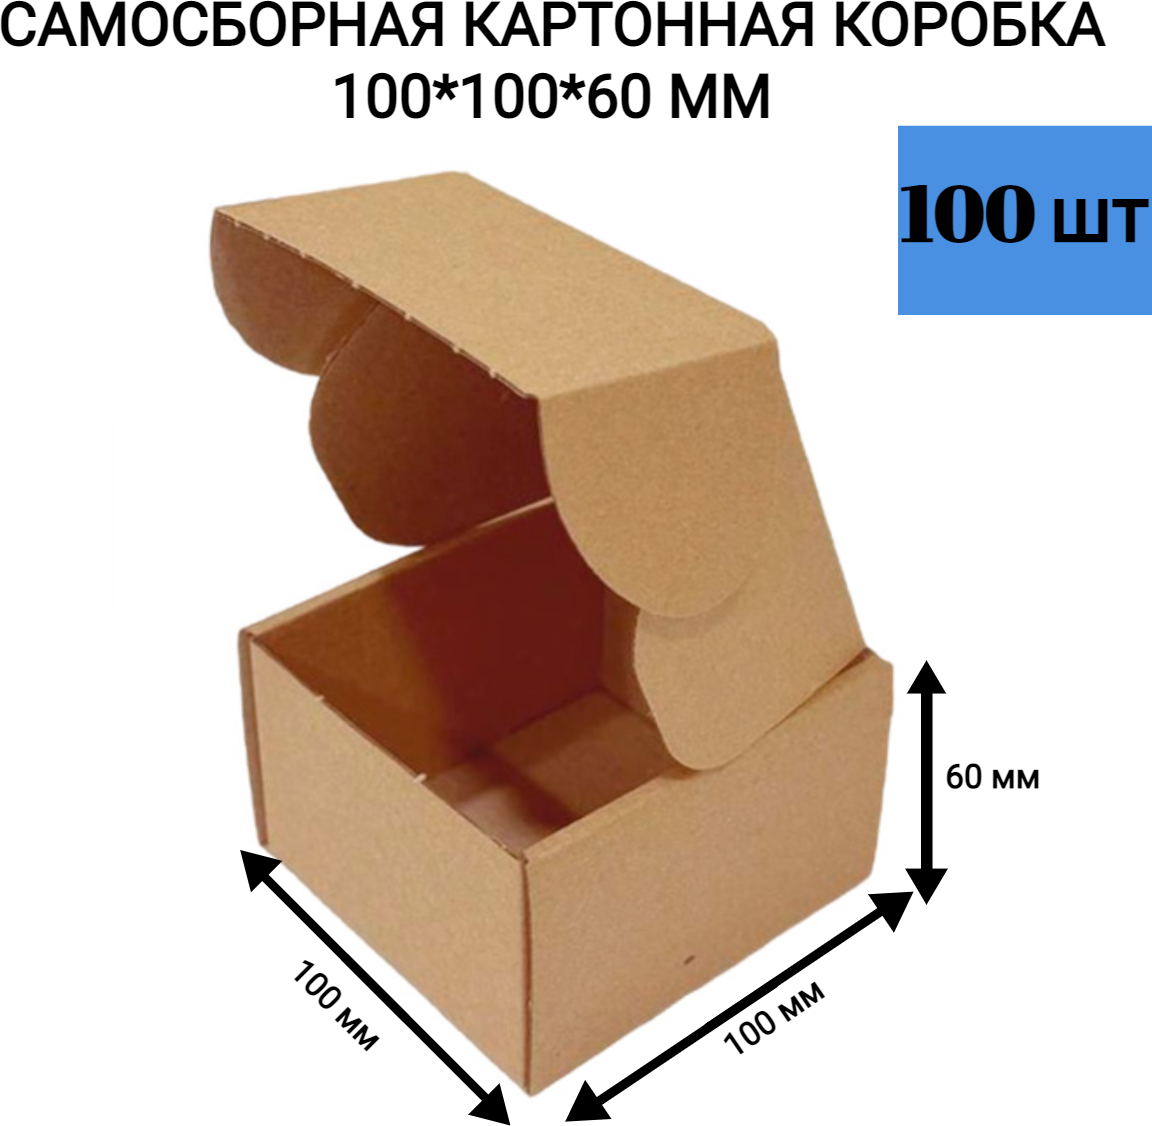 Самосборная картонная коробка 100*100*60 мм. 100 шт